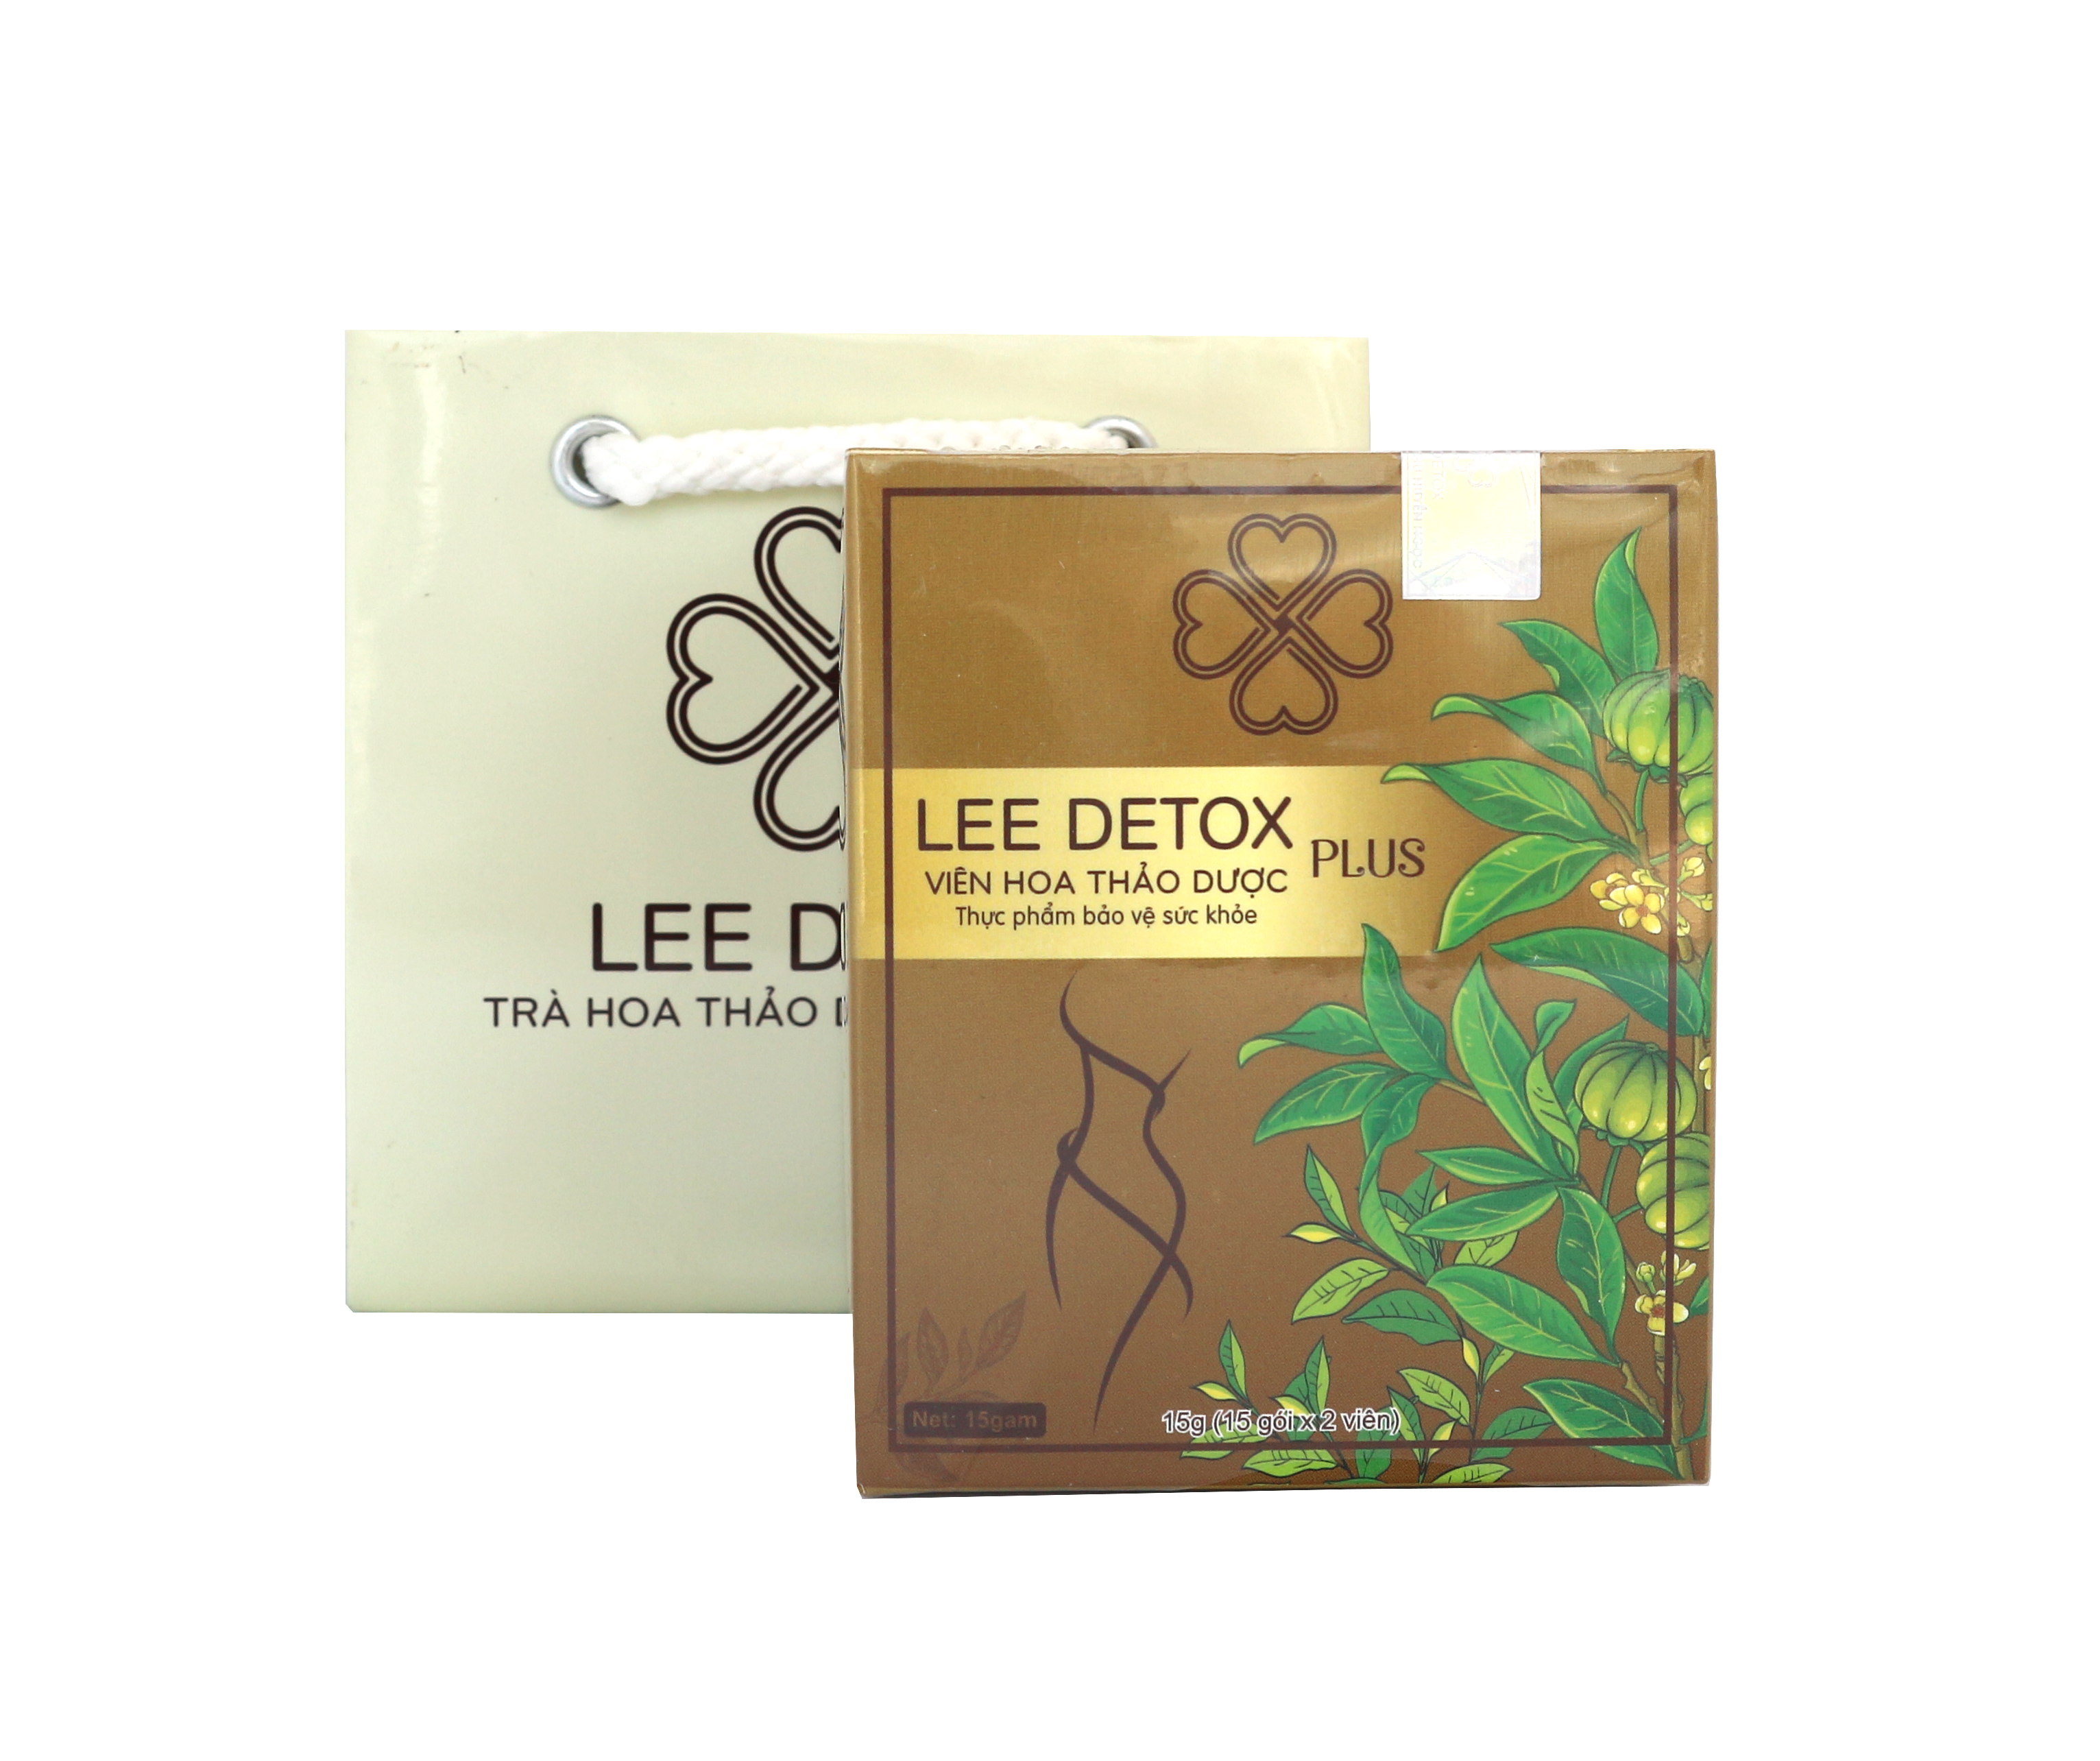 Thực phẩm bảo vệ sức khỏe VIÊN HOA THẢO MỘC LEE DETOX (30 viên) - Hổ trợ giảm cân - Tặng kèm thước dây CLD